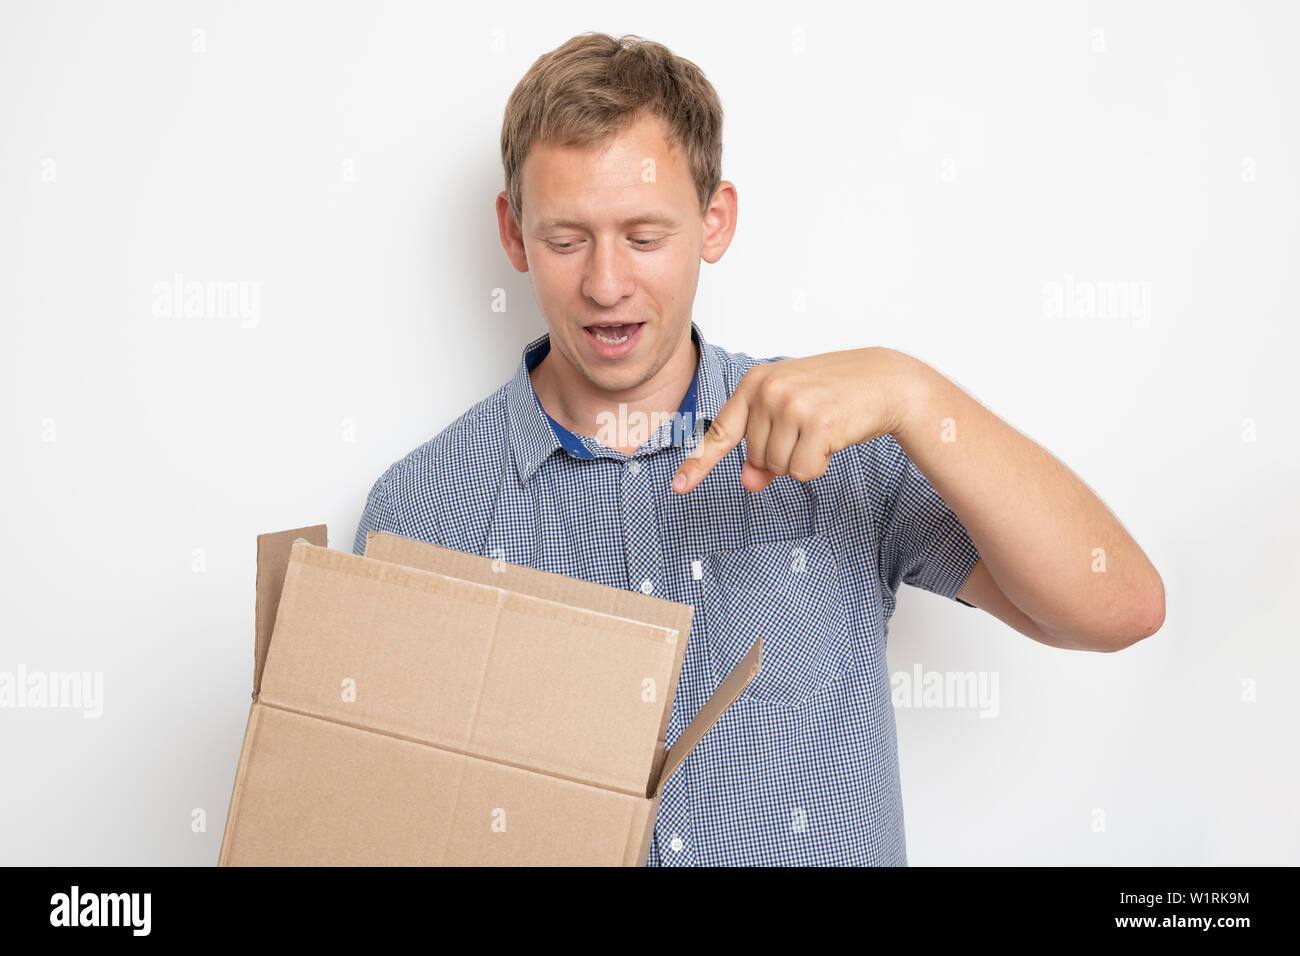 Descrizione: curioso uomo cerca all'interno di una scatola di cartone che egli tiene nelle sue mani su sfondo bianco Foto Stock